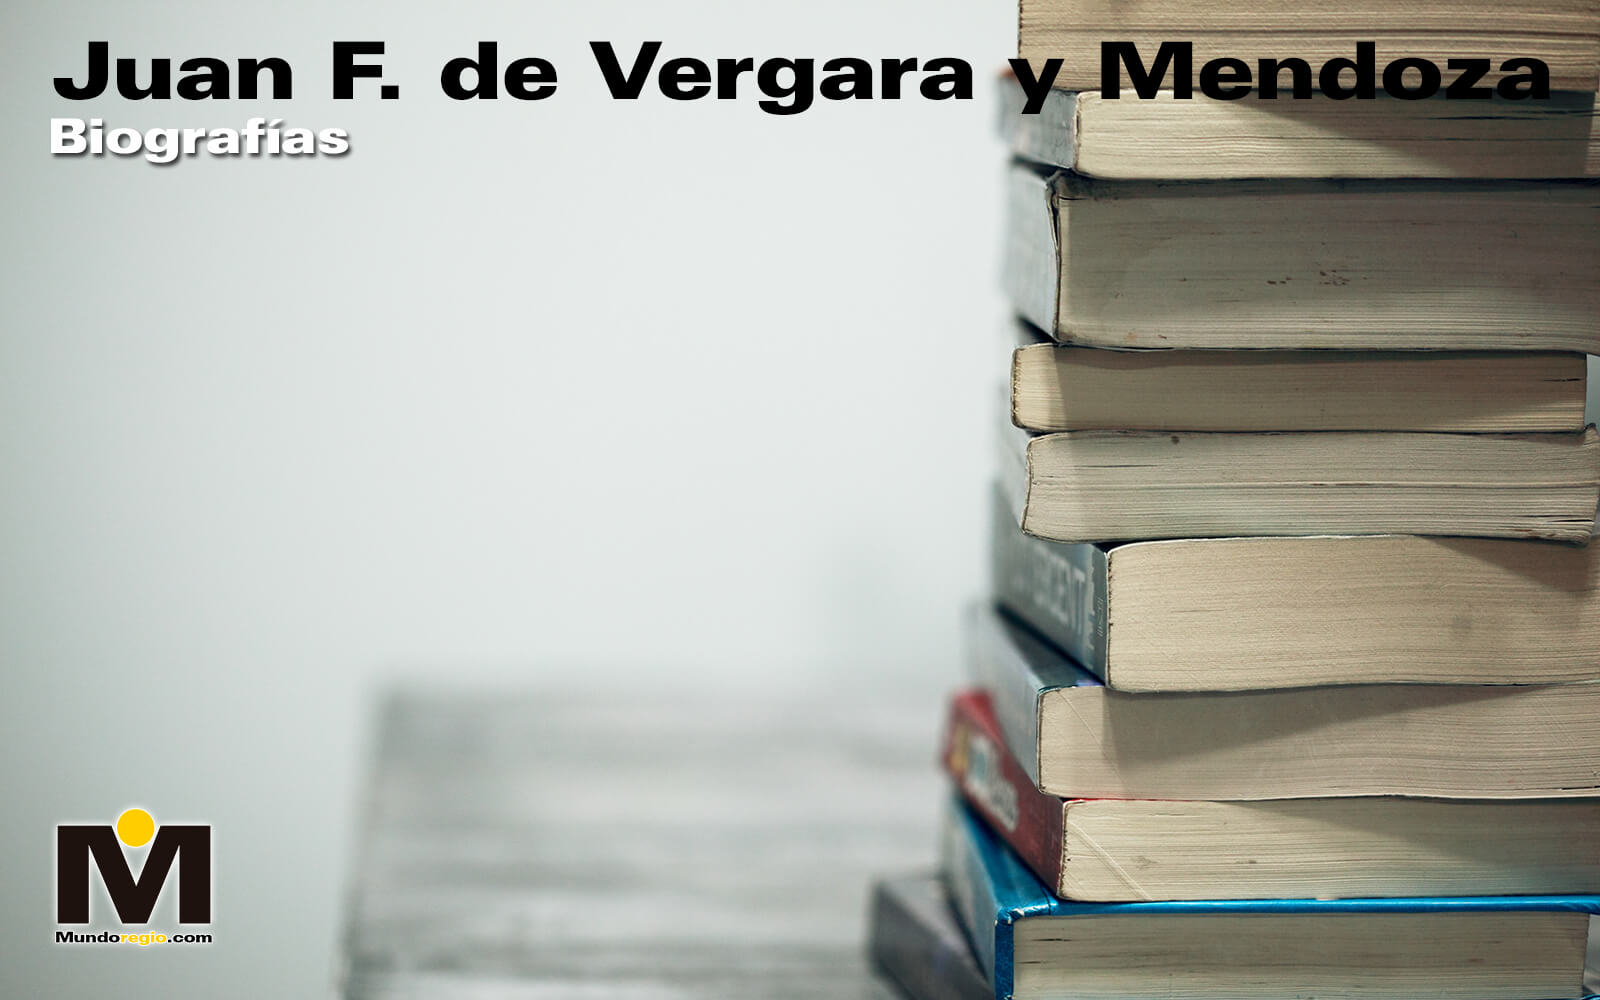 Juan F. de Vergara y Mendoza